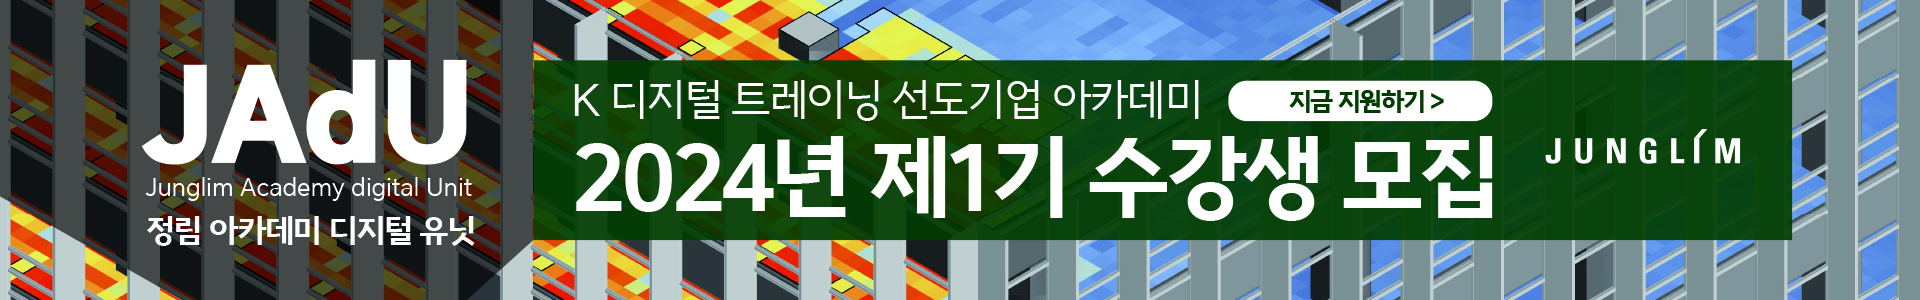 09배너_인력개발사업단홈페이지.jpg